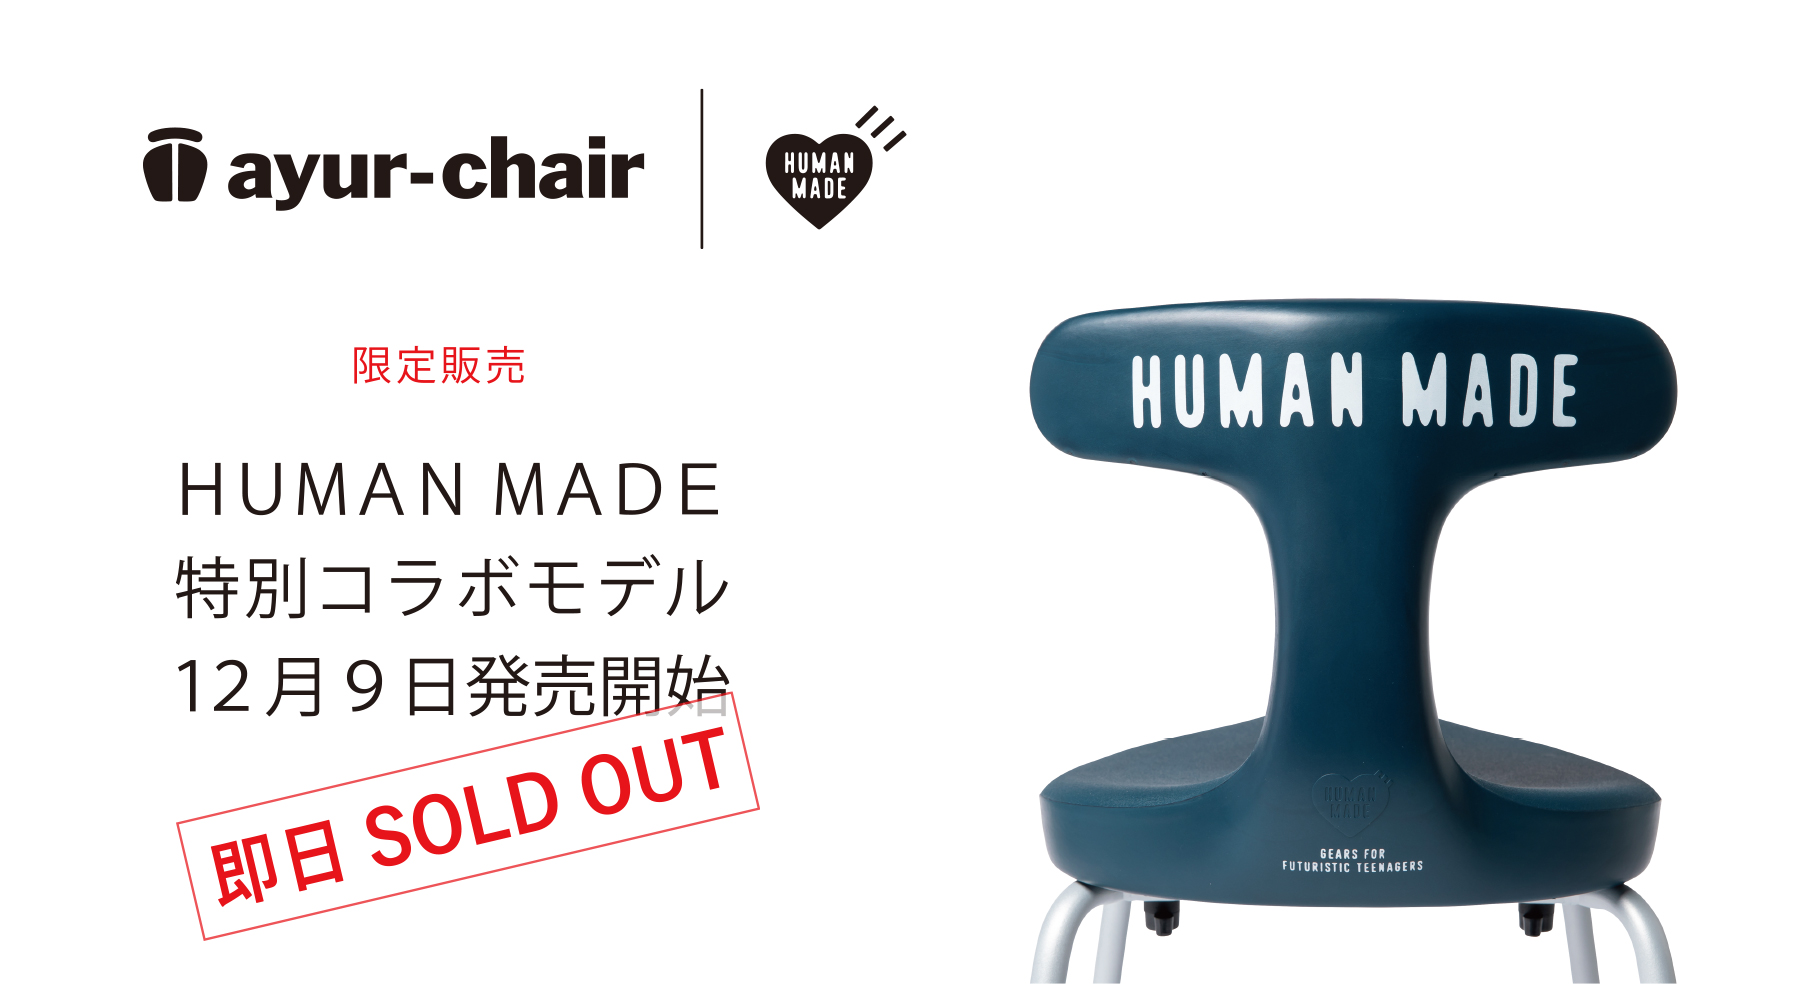 新品ayur-chair × human made